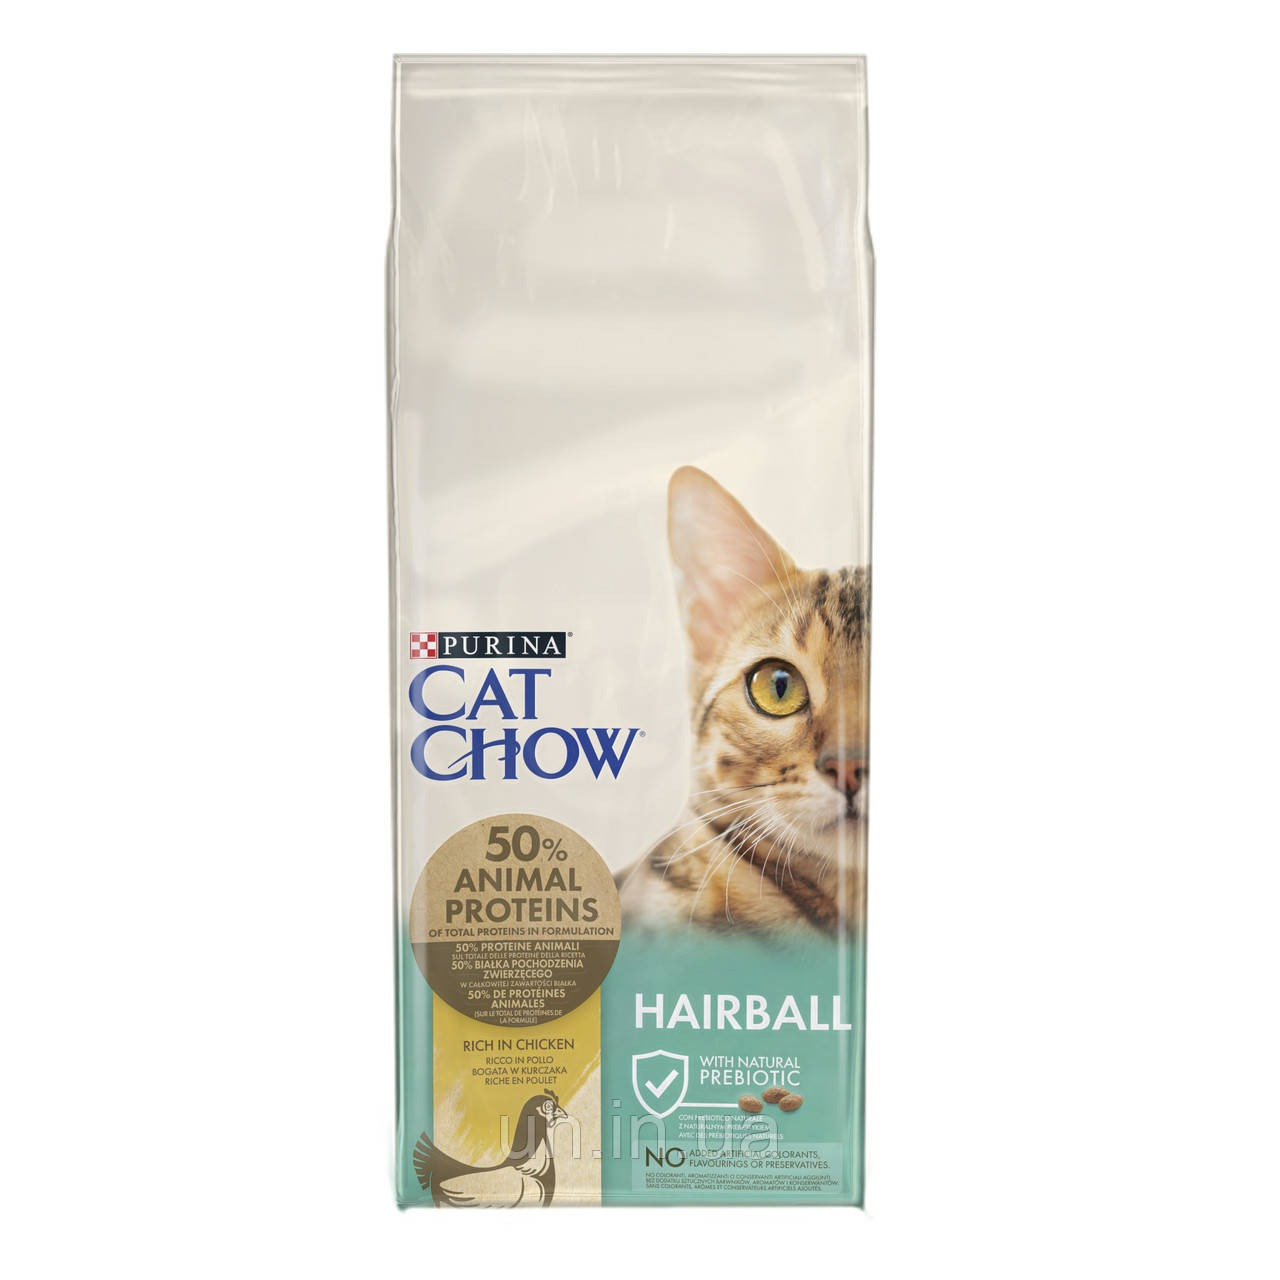 Пуріна Cat Chow Hairball сухий корм для котів, контроль утворення грудок шерсті в шлунку, курка 0.4КГ